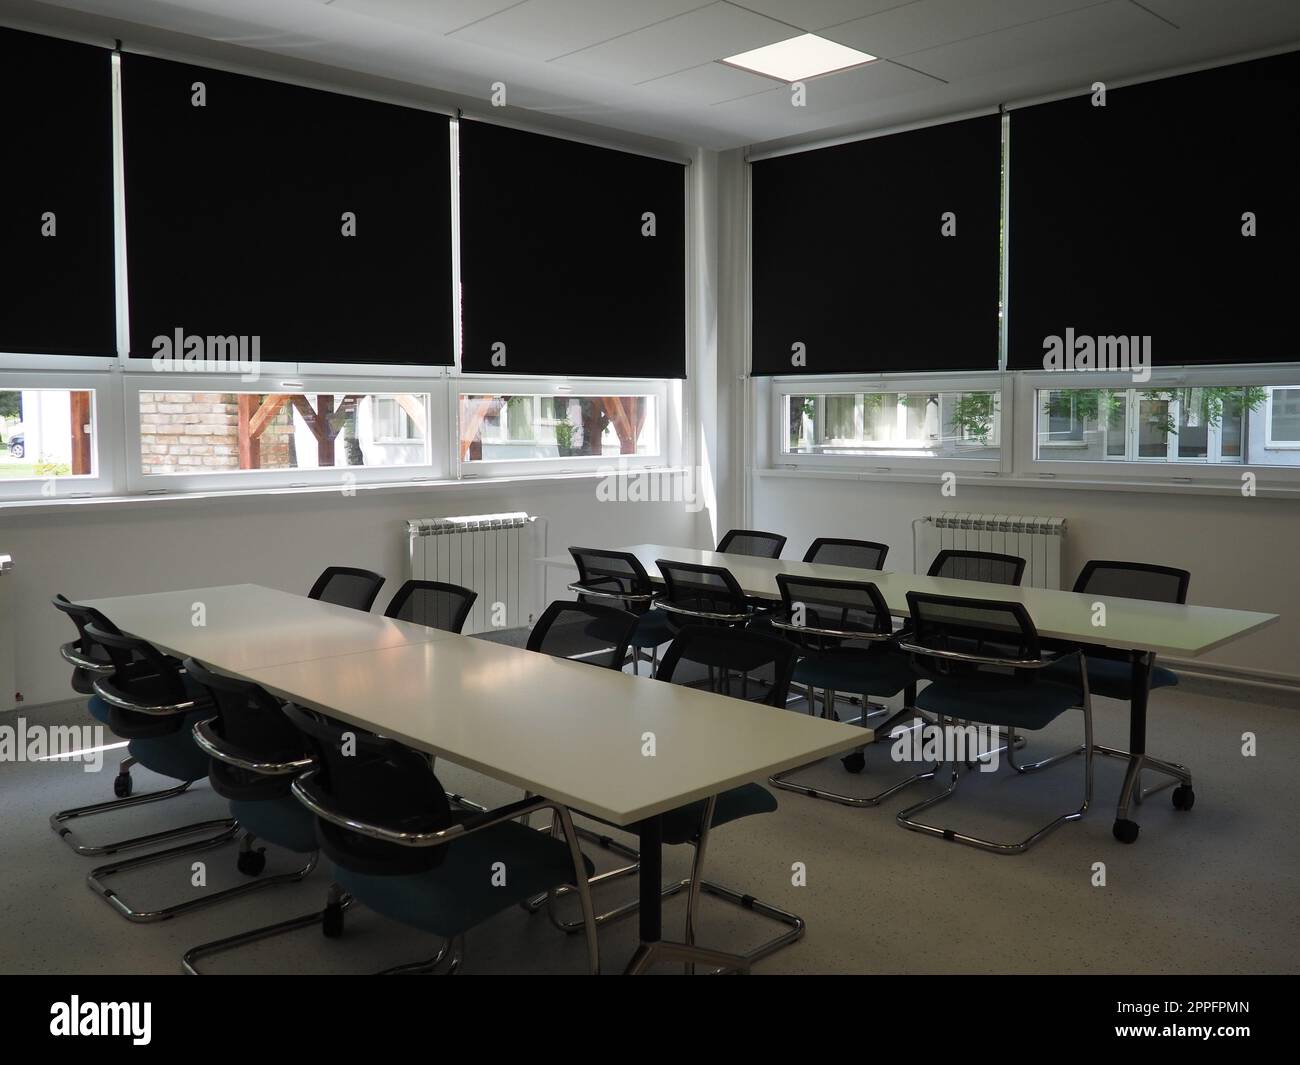 Tisch und Stühle im Besprechungsraum im Büro, im Klassenzimmer oder im Bibliothekssaal. Weiße, schwarze und graue Farben im Innenraum. Schwarze Jalousien zum Verdunkeln des Raums. Modernes Innendesign Stockfoto